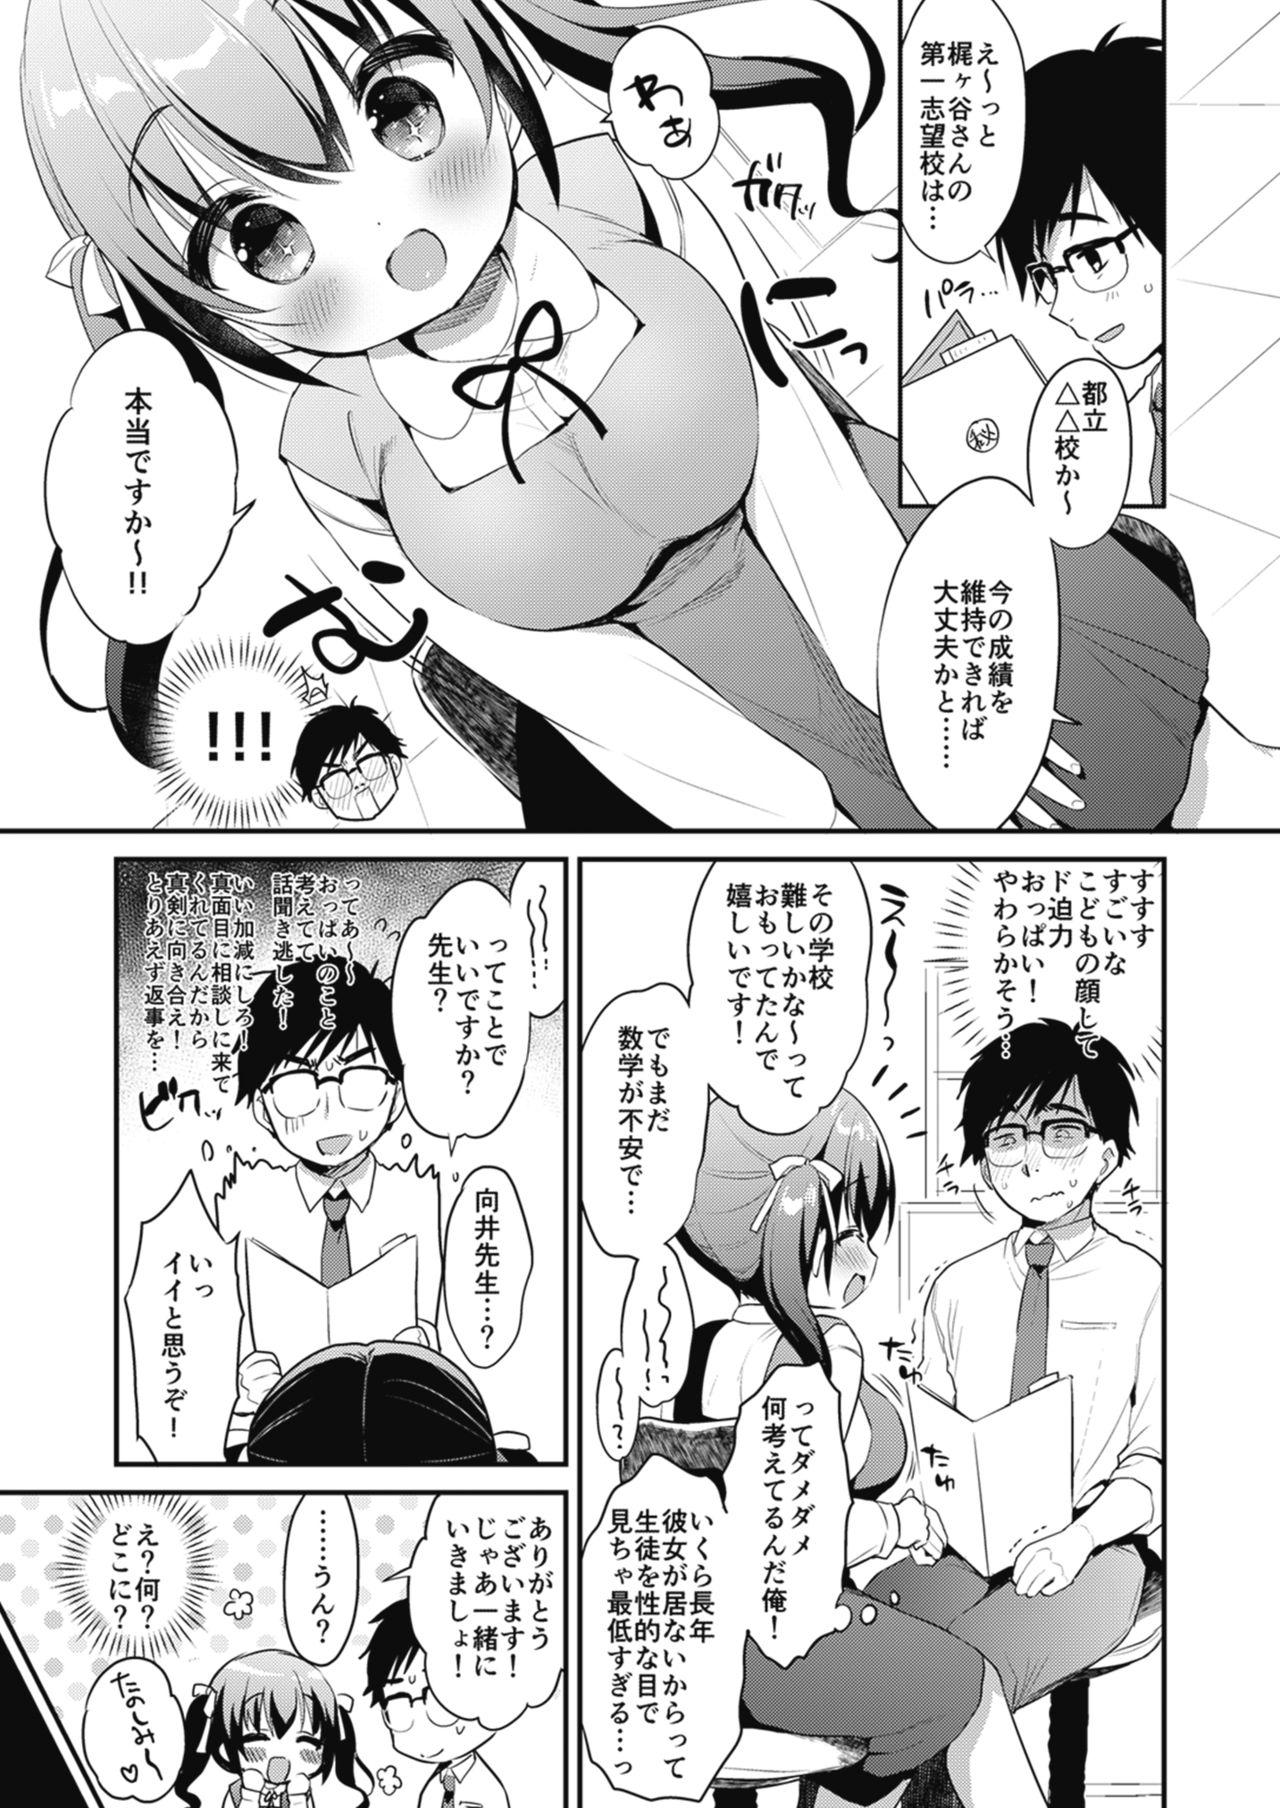 Young Bokura no CQC - Original 18yo - Page 9